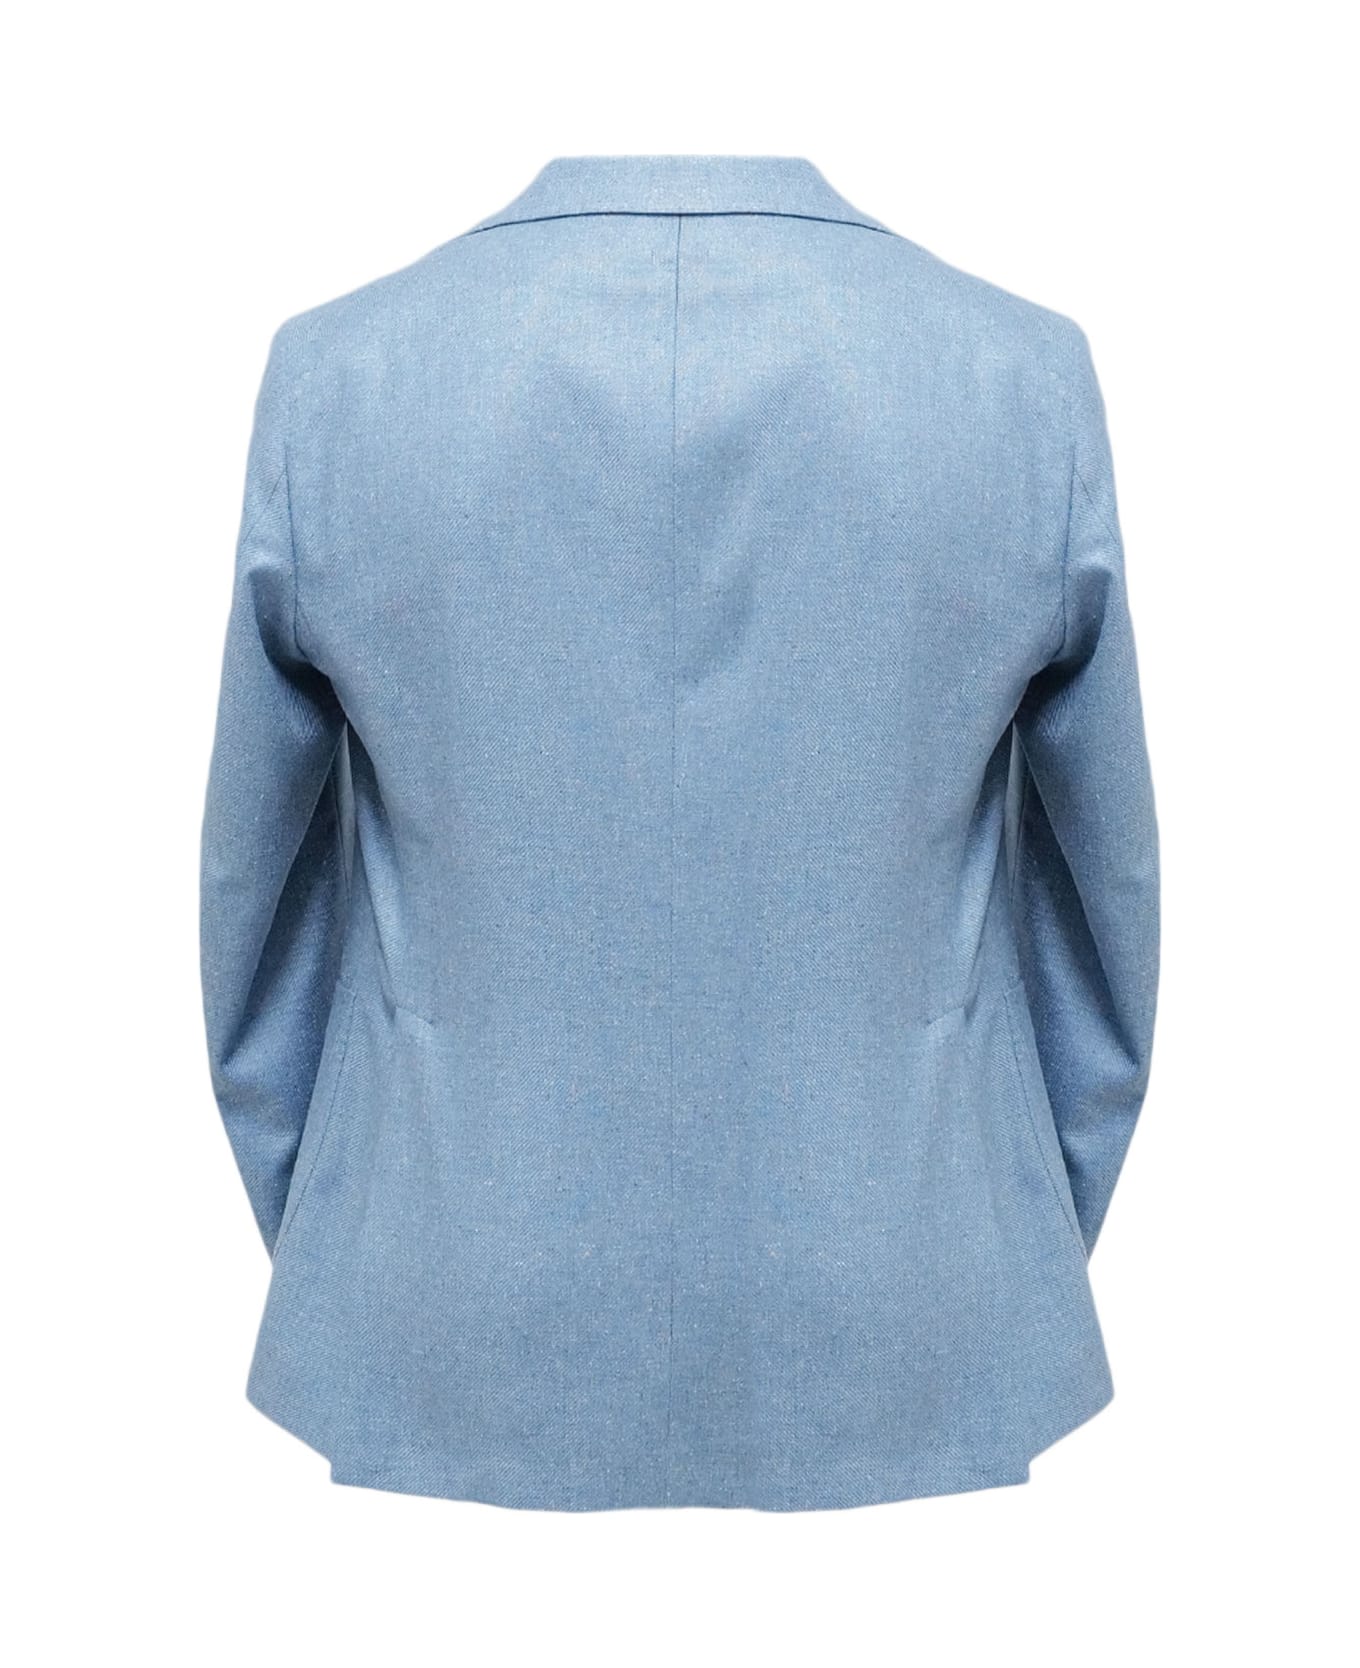 Tagliatore Jacket - Clear Blue